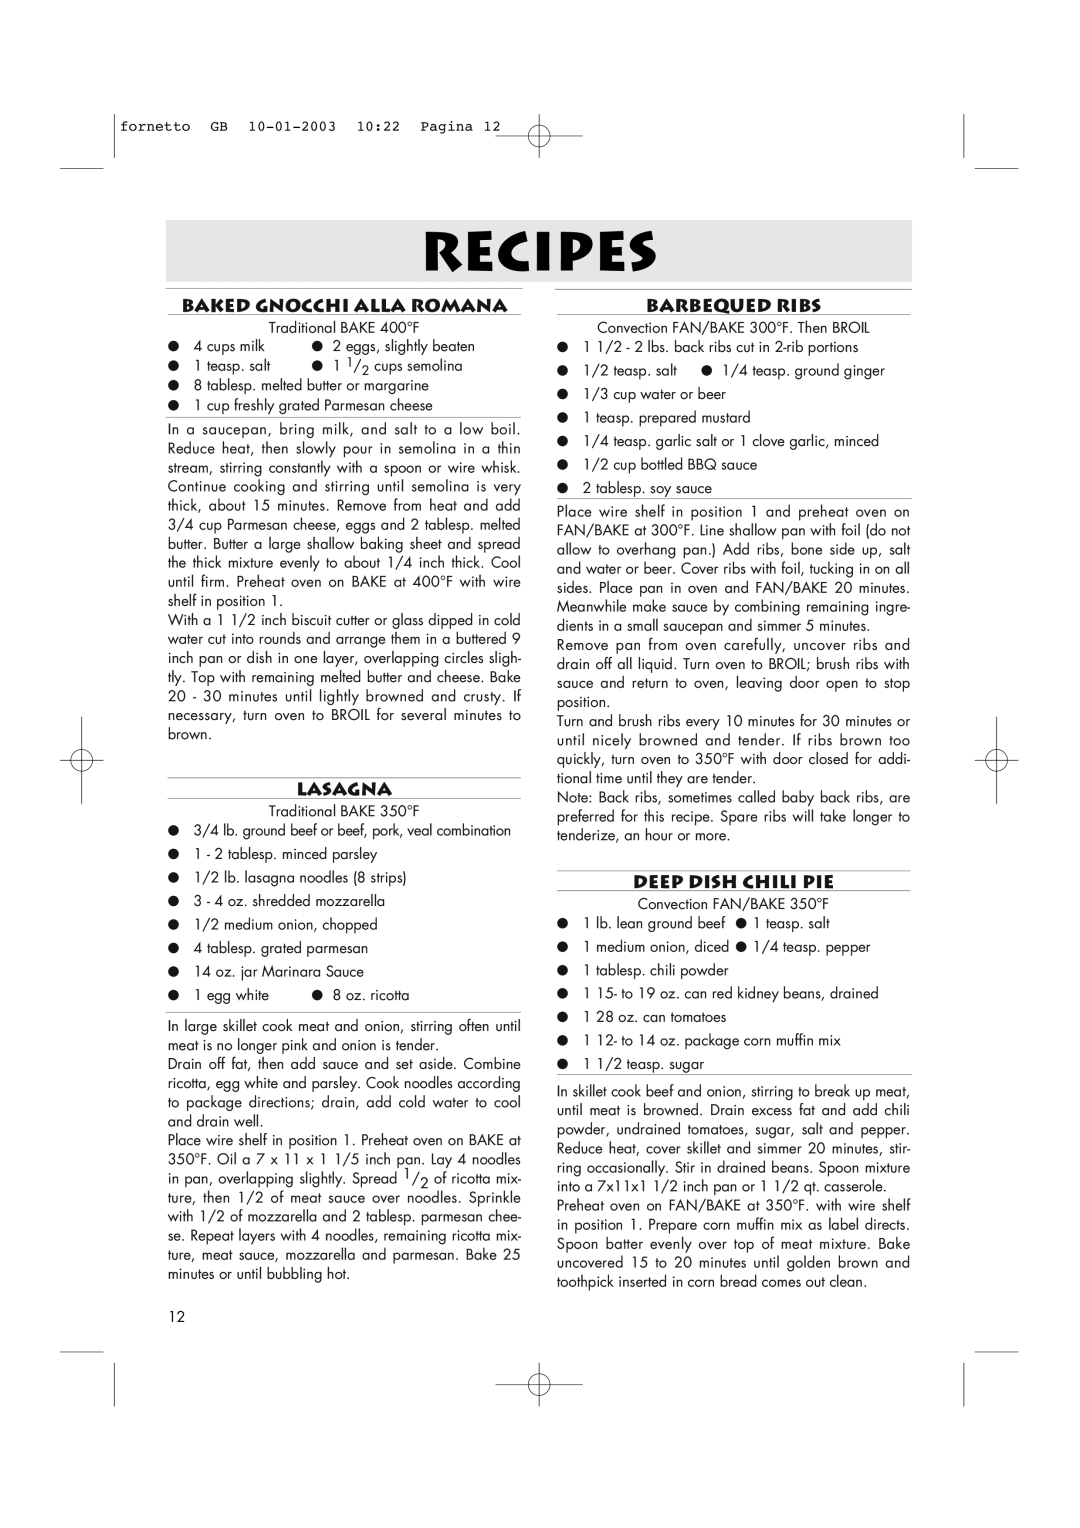 DeLonghi AR690 manual Baked Gnocchi Alla Romana, Lasagna, Barbequed Ribs, Deep Dish Chili Pie, Recipes 